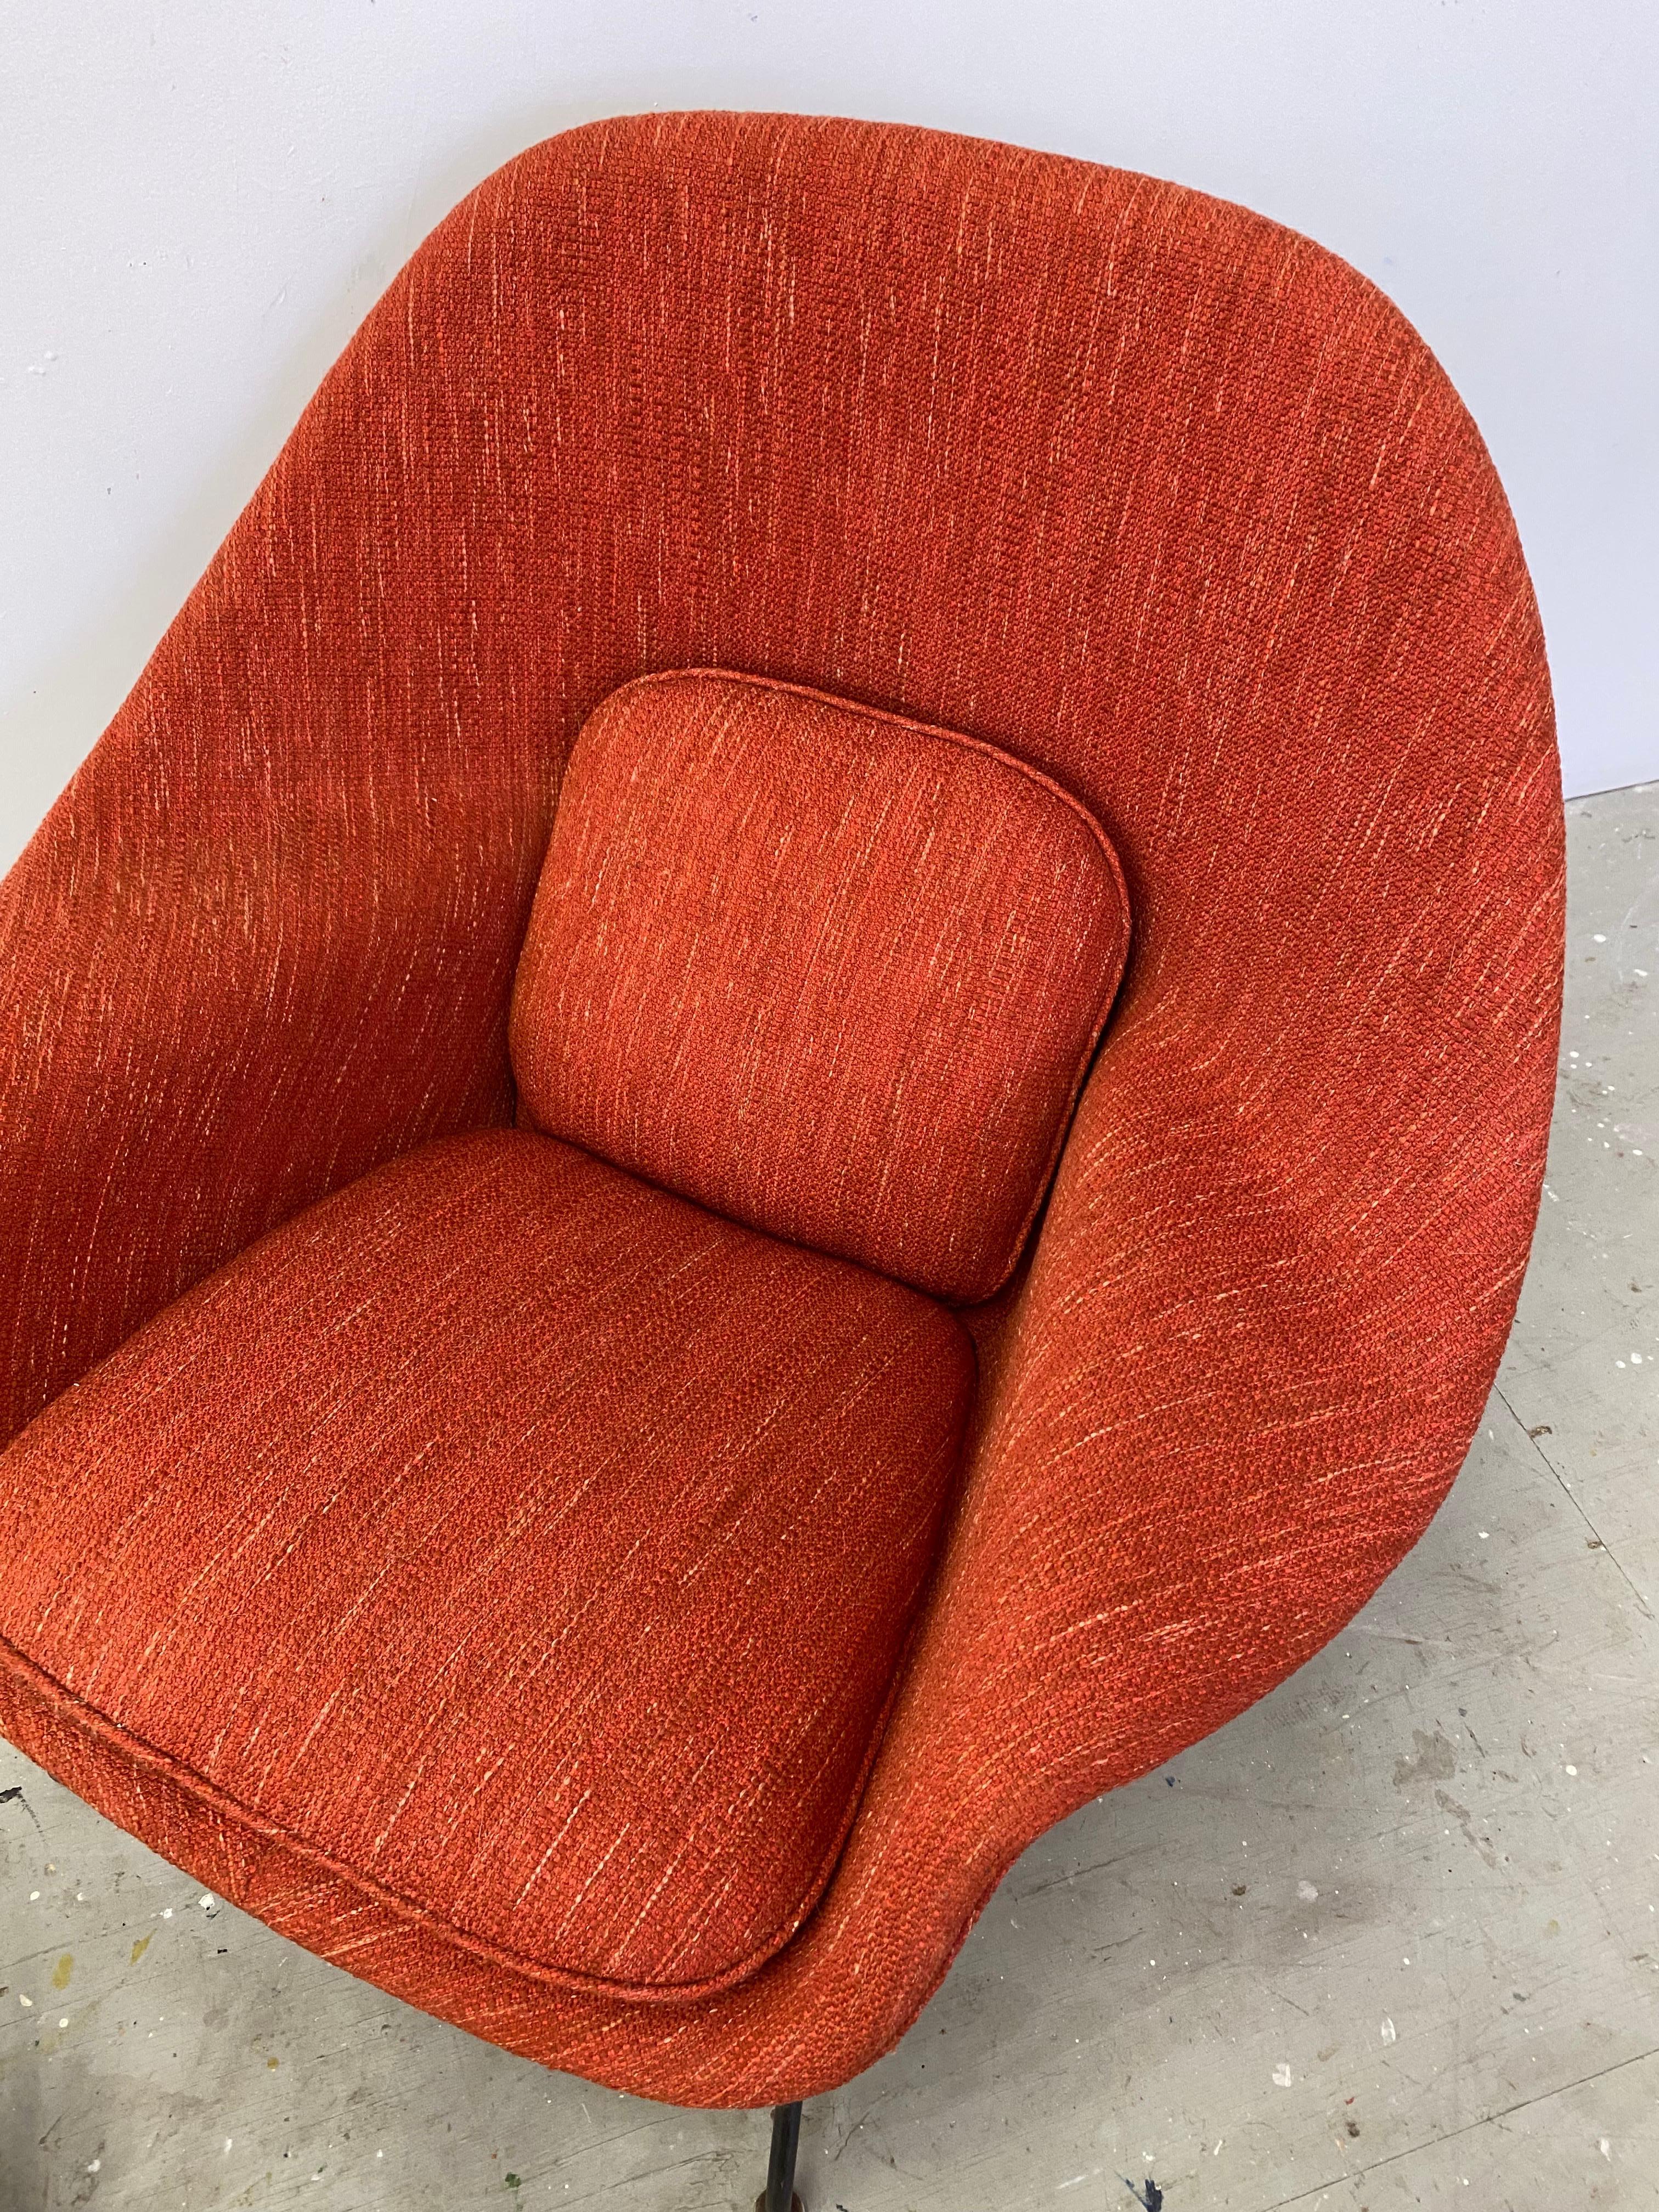 Eero Saarinen for Knoll Womb Chair and Ottoman 1